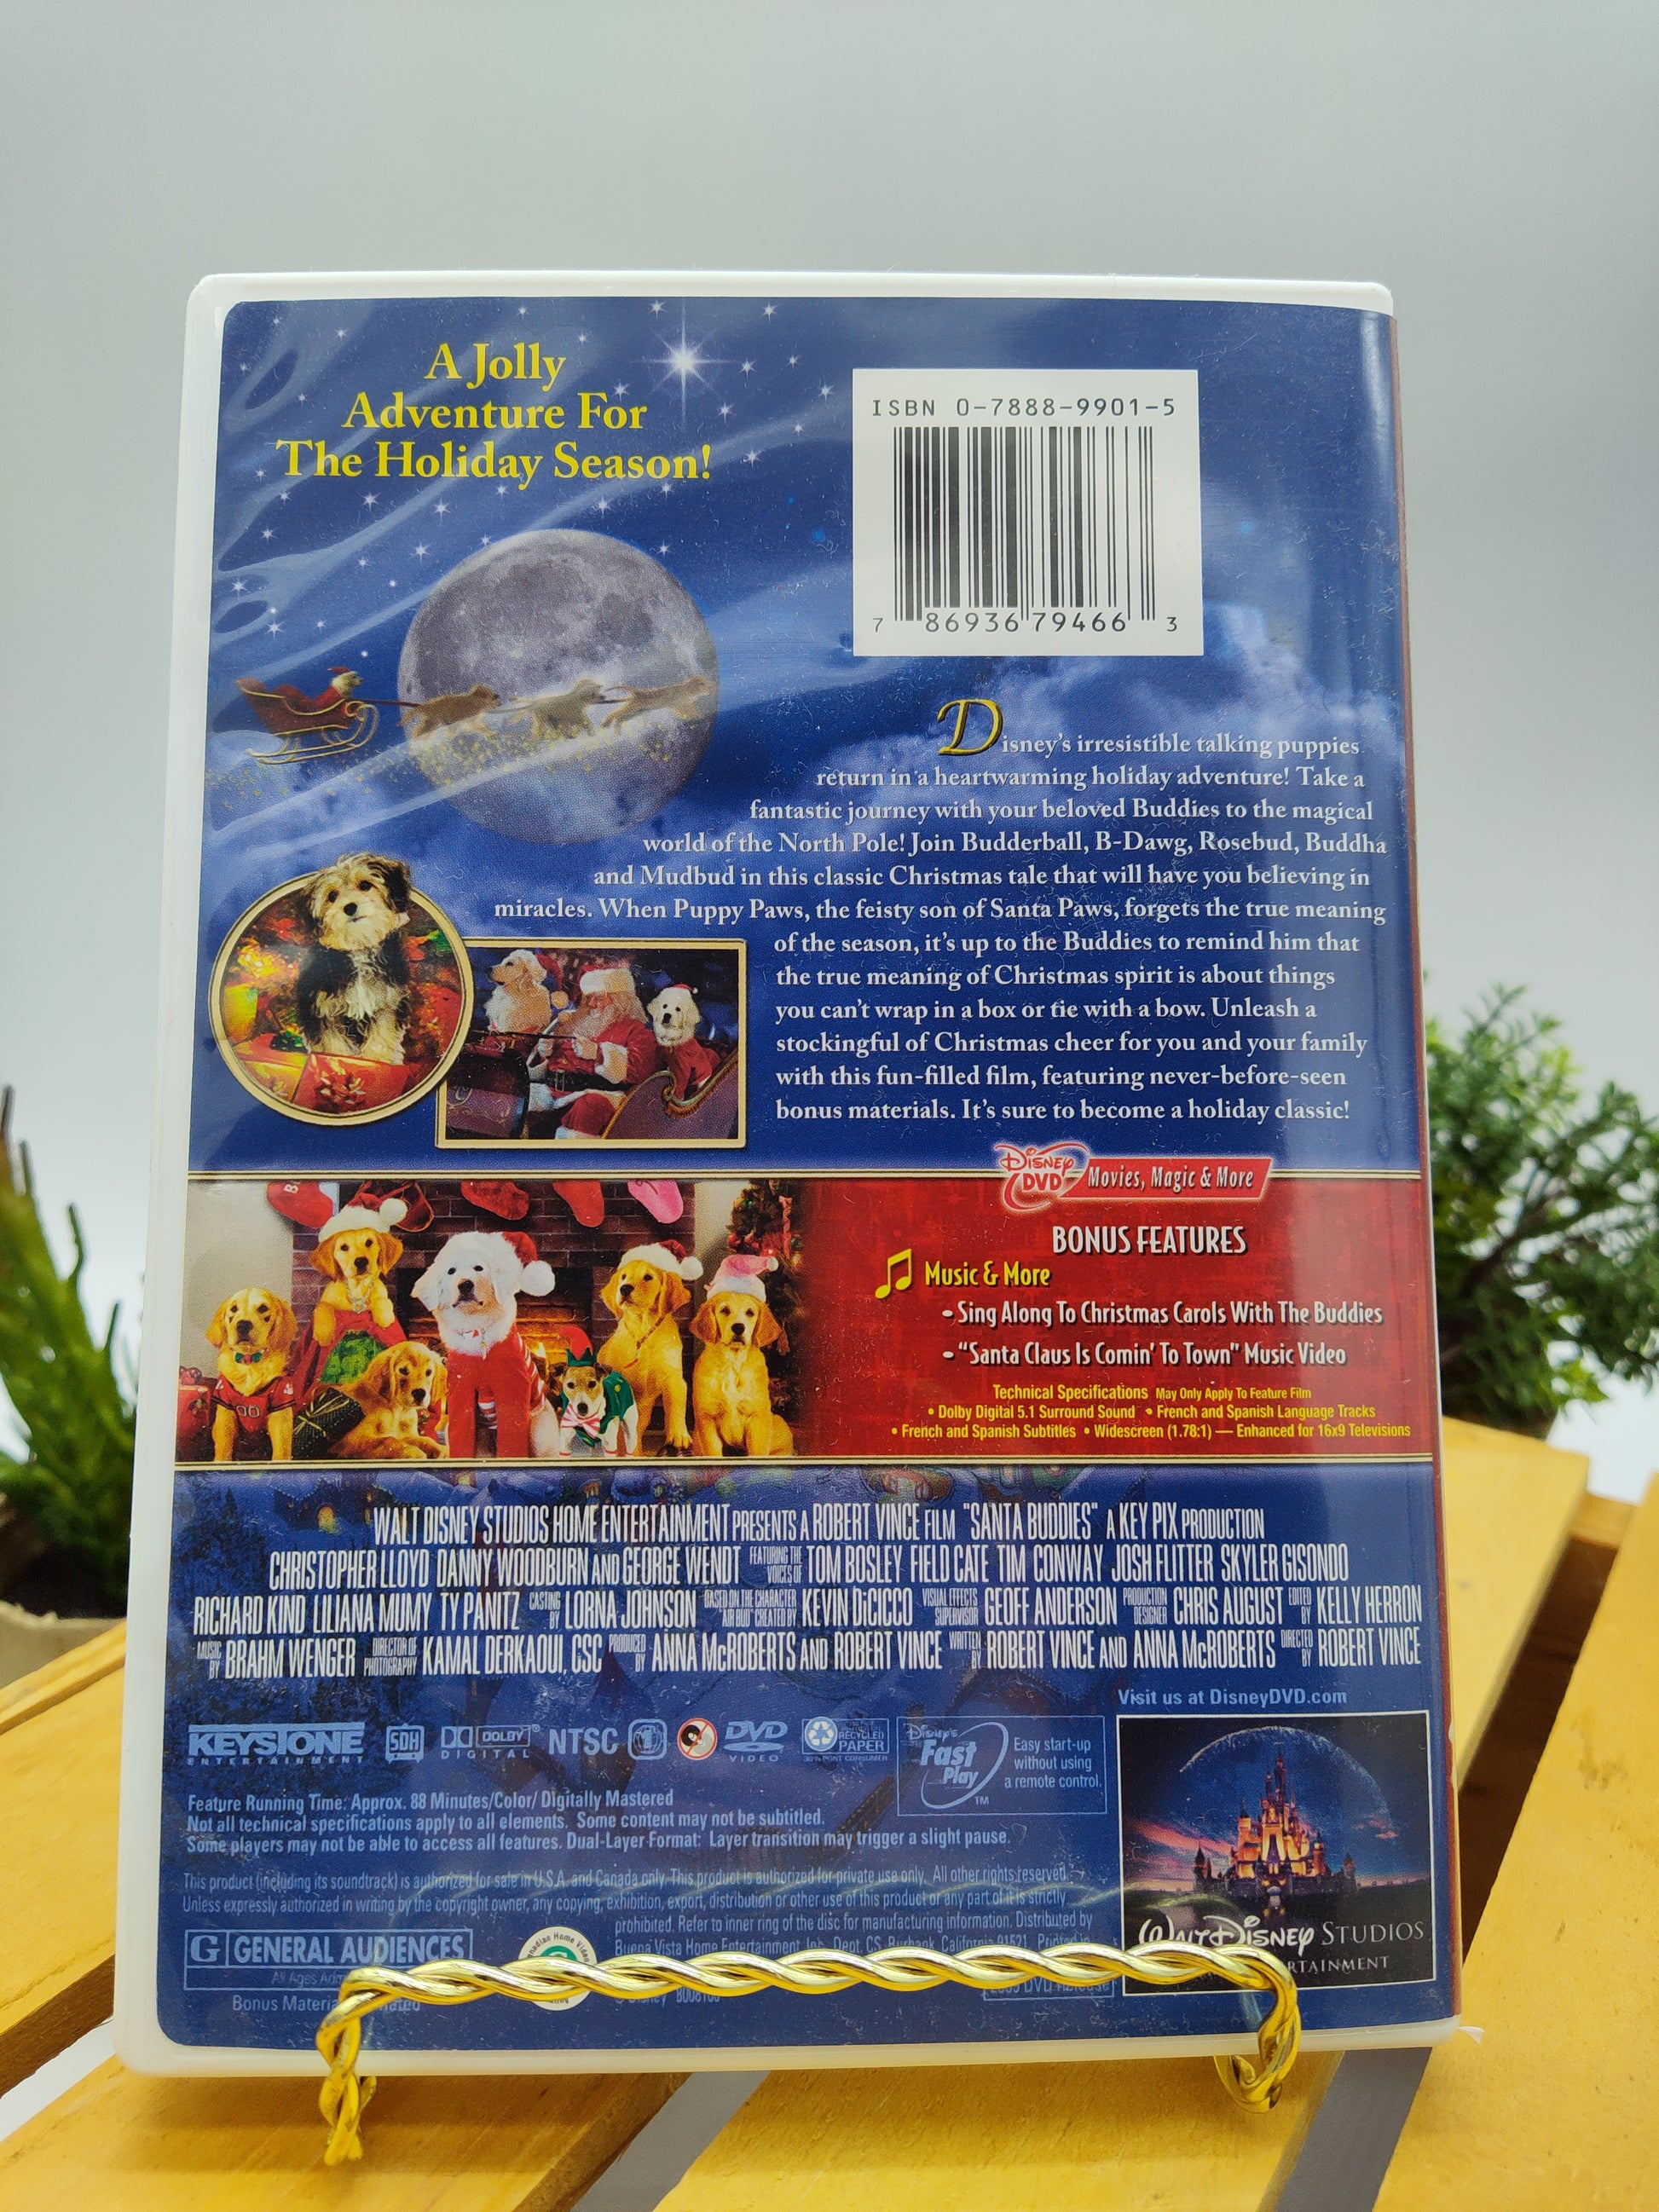 DVD DETAILS: 'Space Buddies